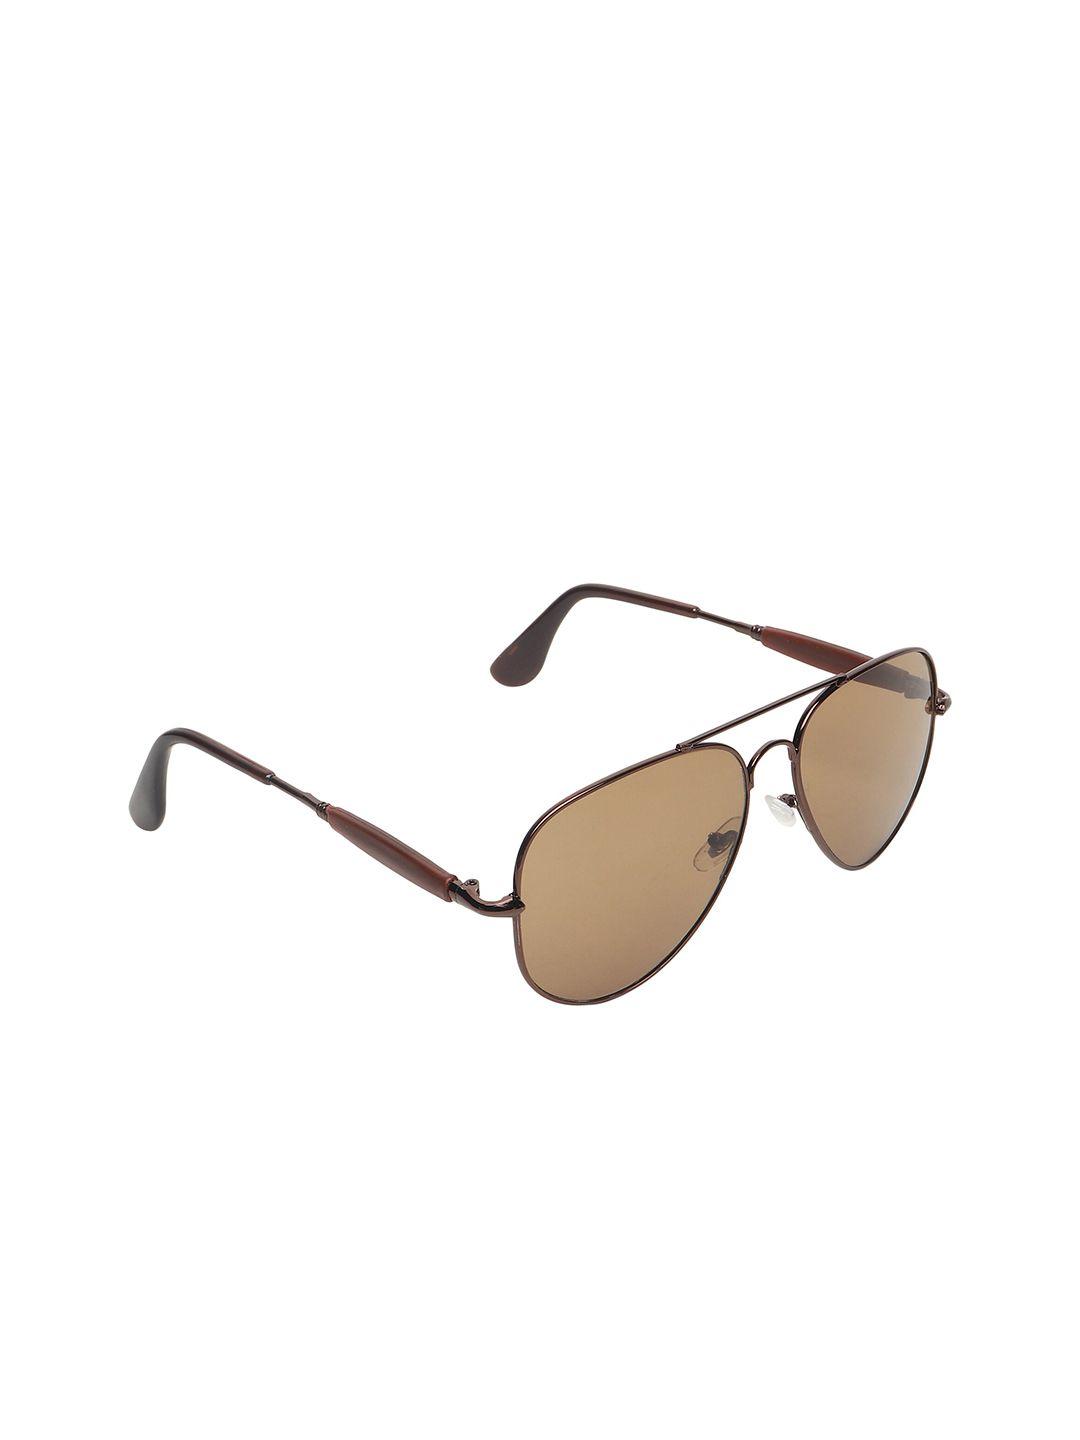 garth lens & aviator sunglasses with uv protected lens 2148 avi cbrn_grt